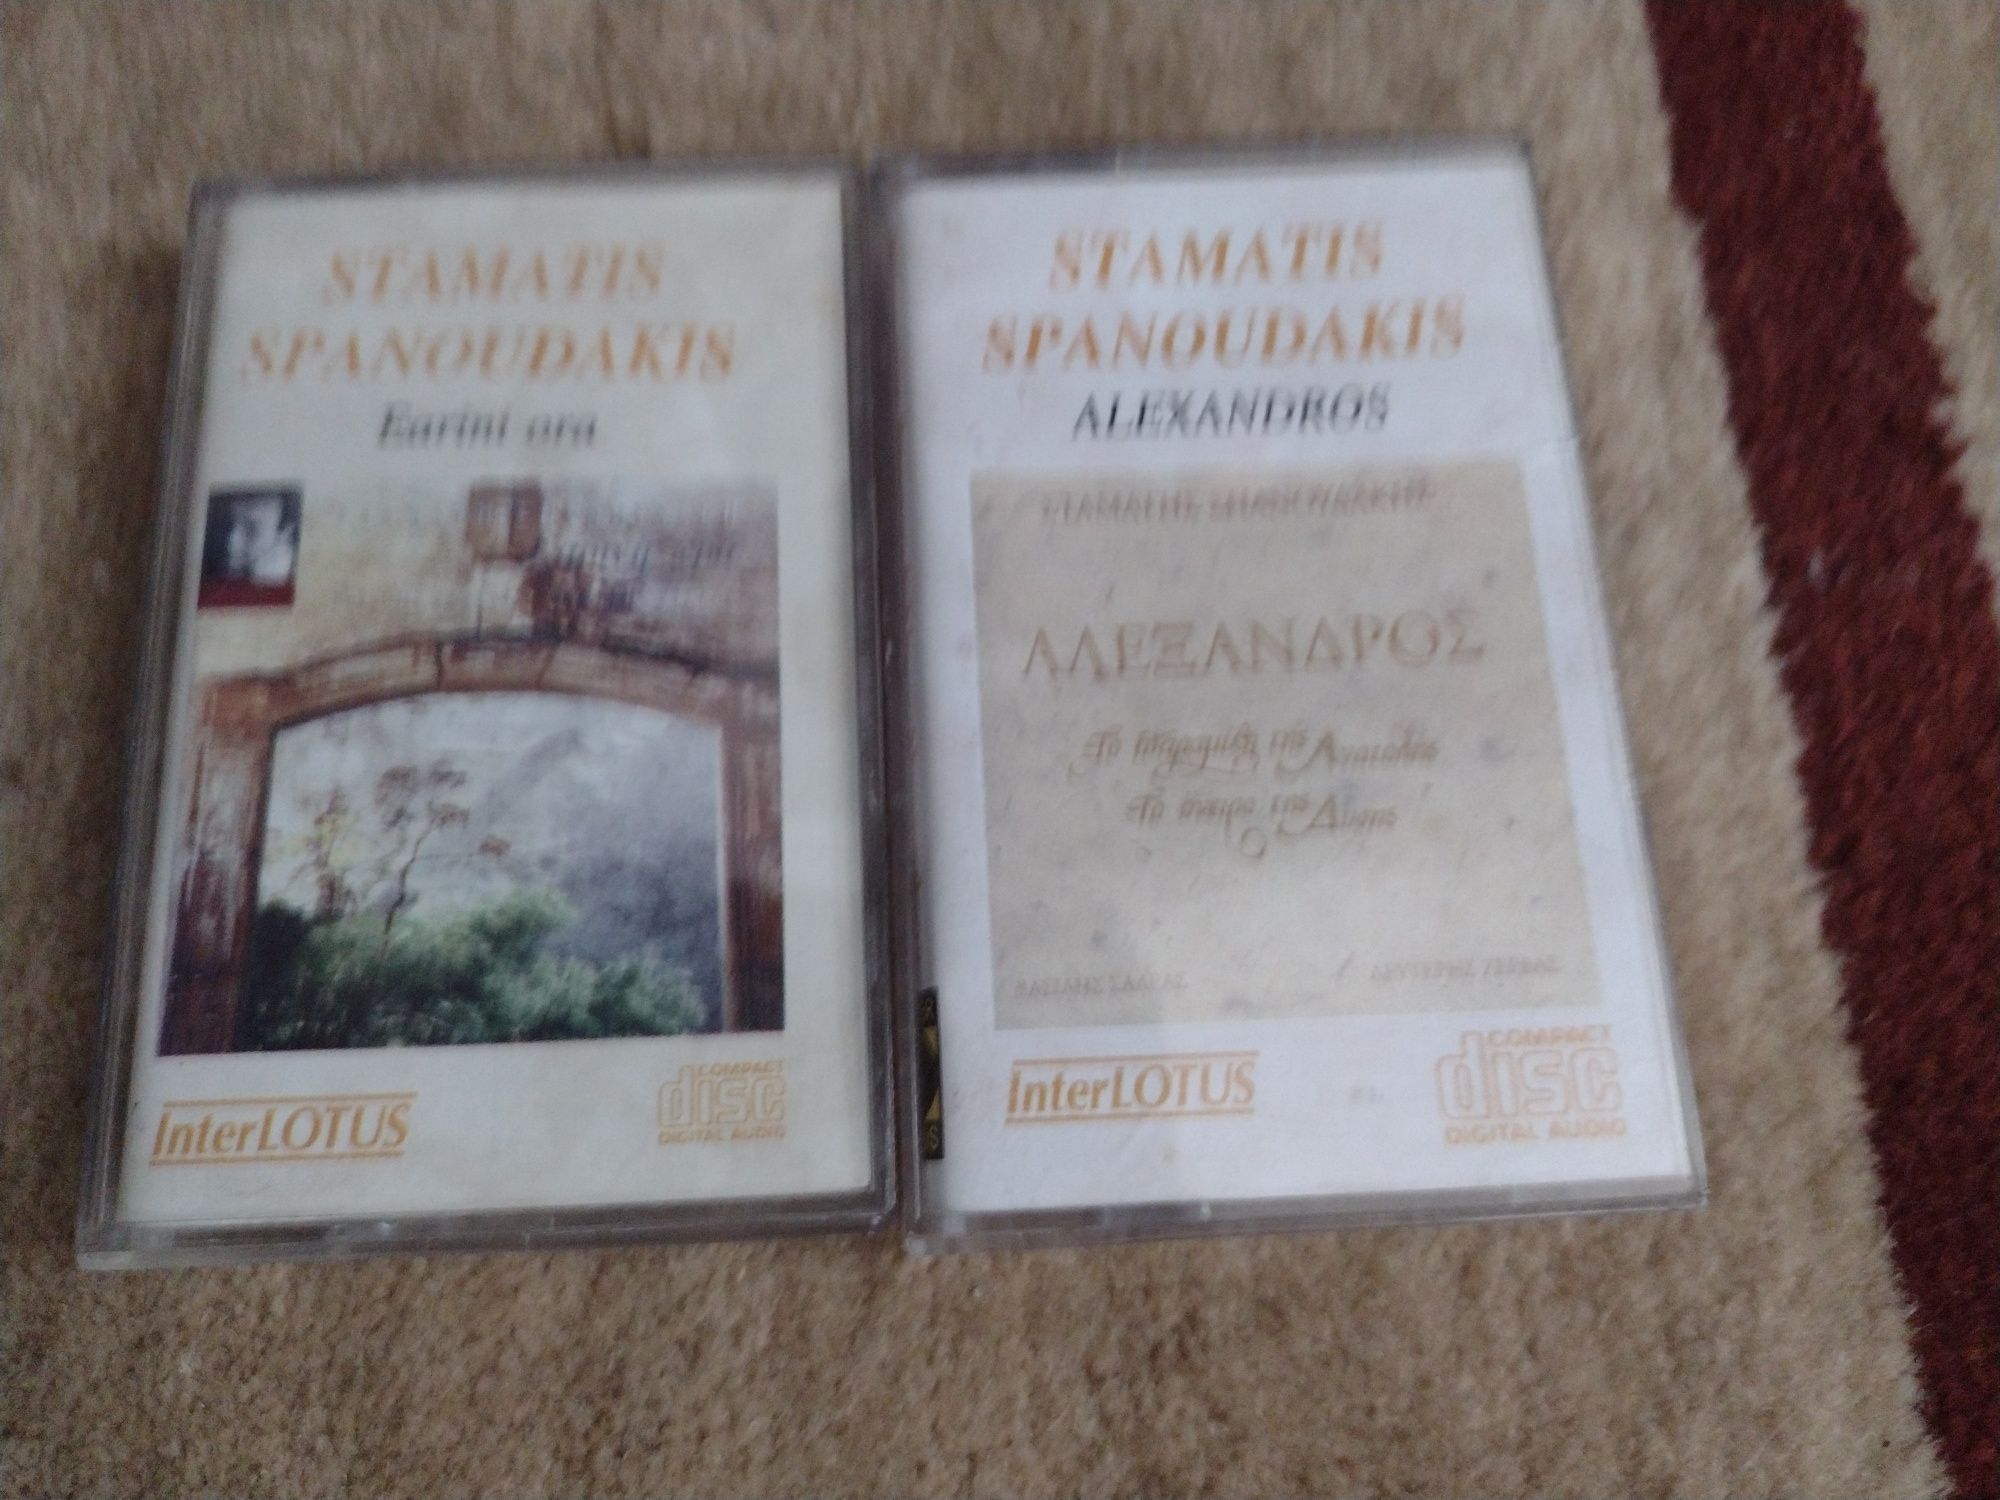 Stamatis Spanoudakis casete audio